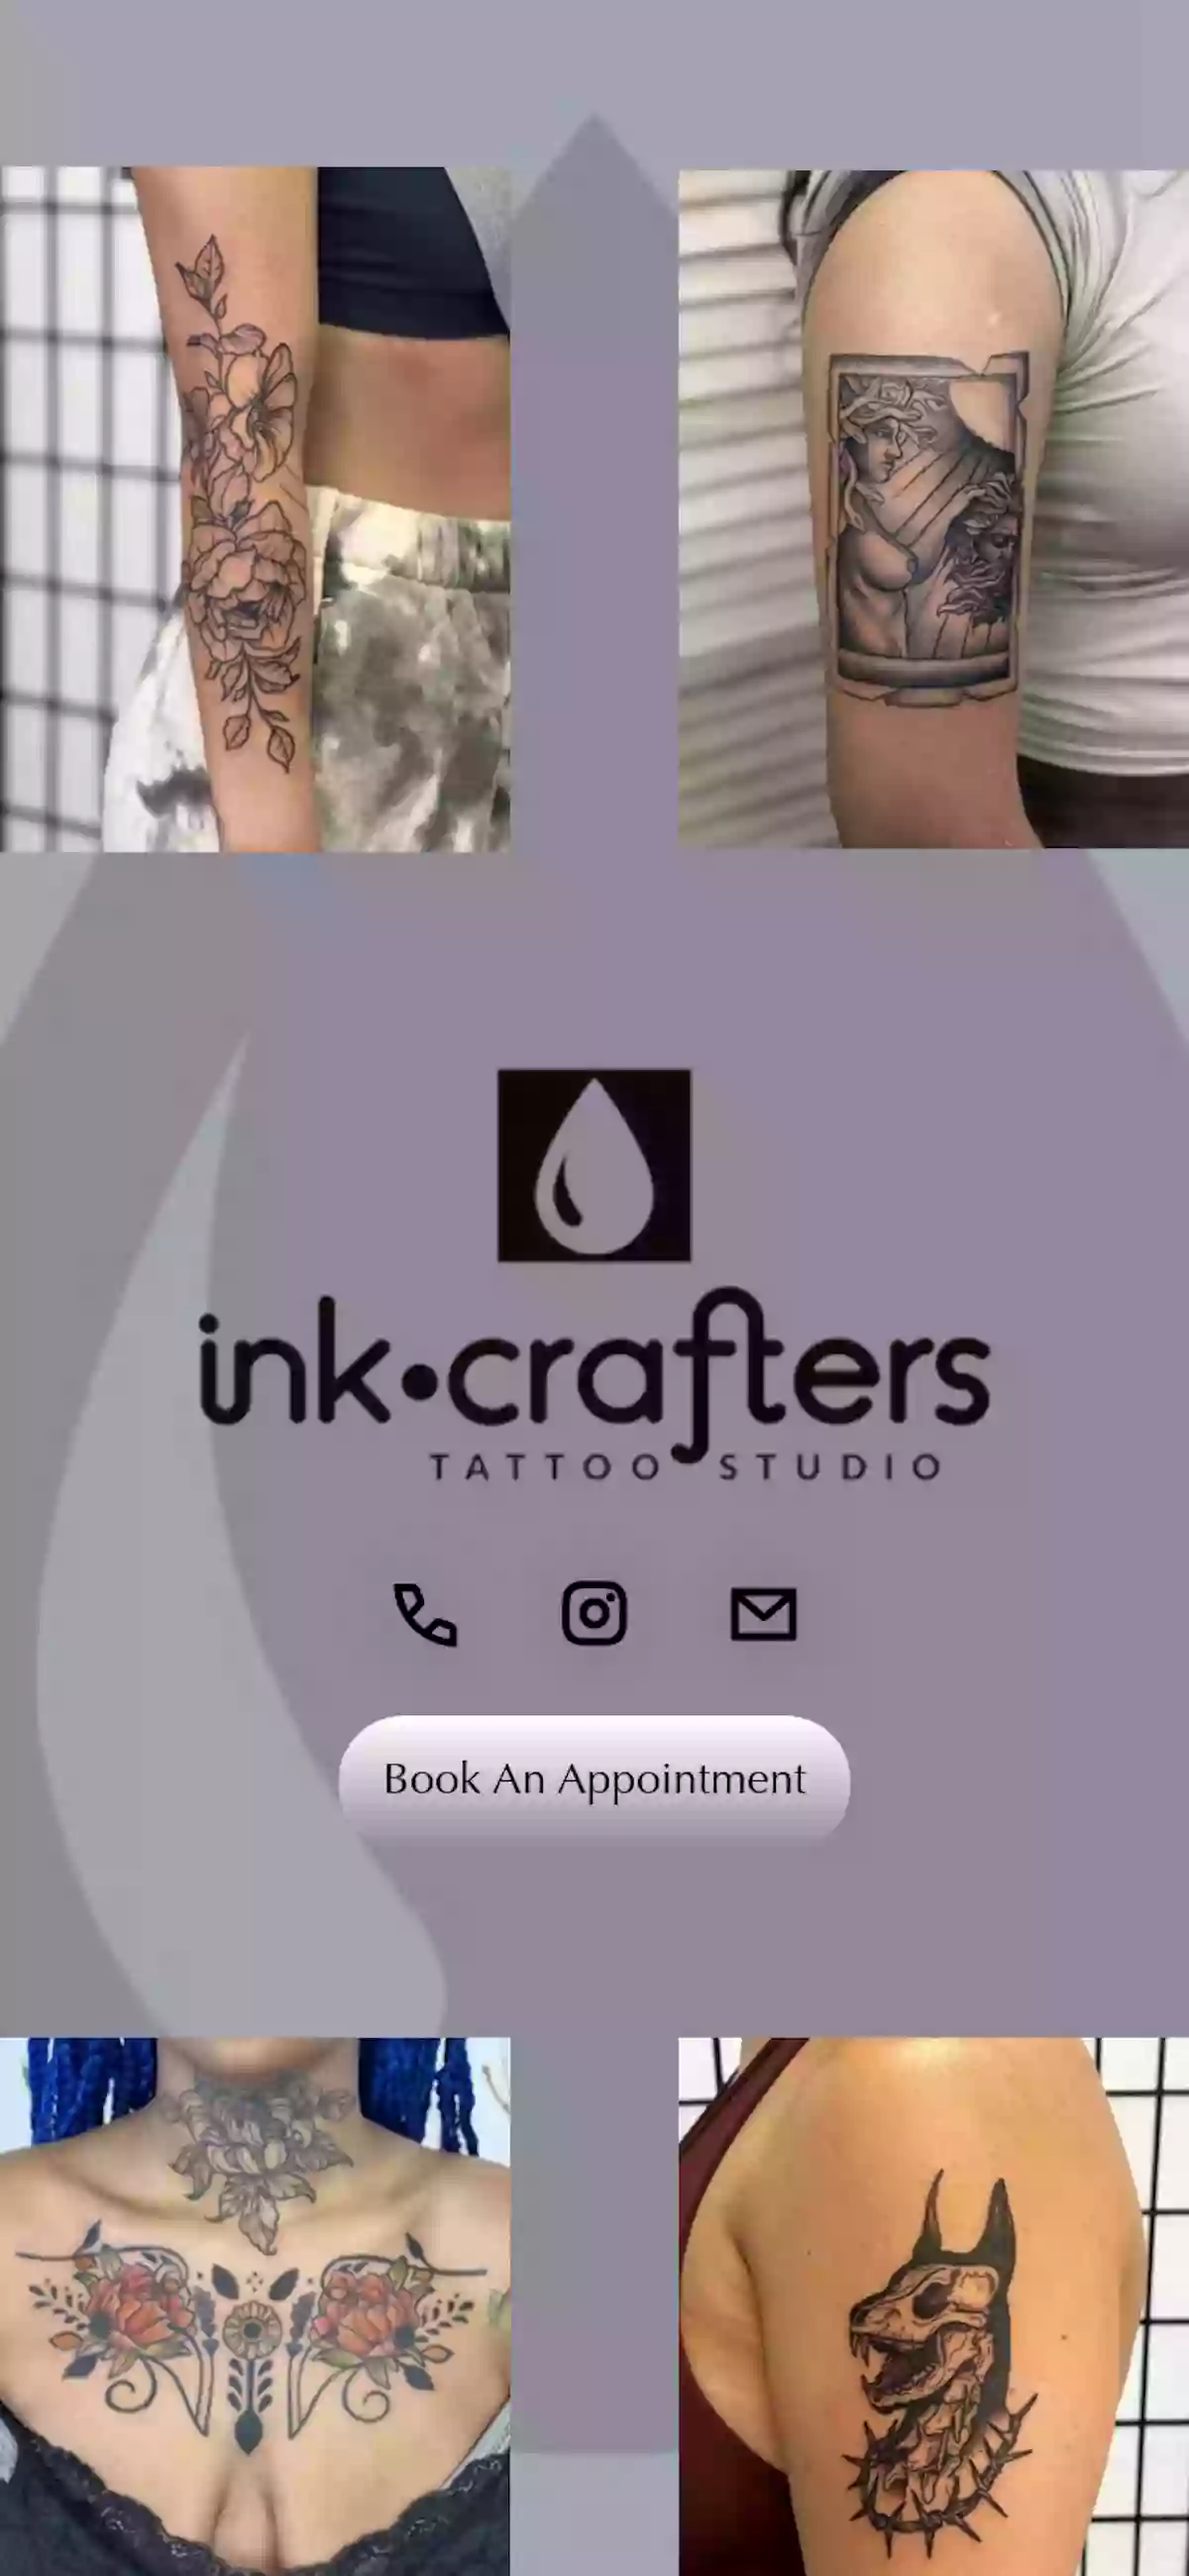 InkCrafters Tattoo Studio